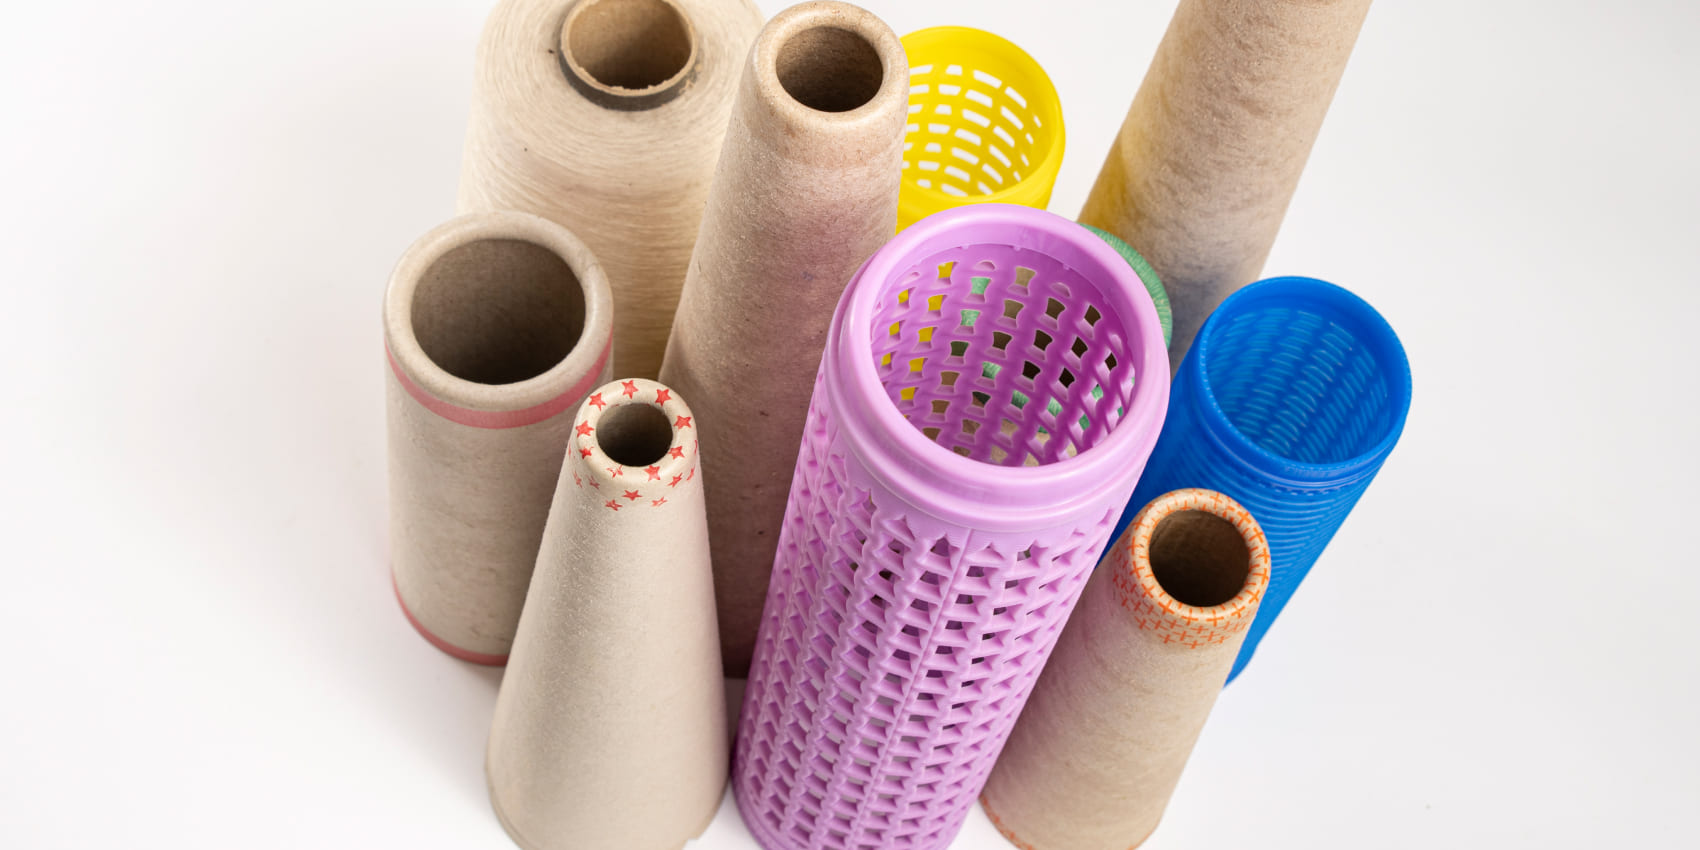 Tubs de plàstic per a la indústria tèxtil